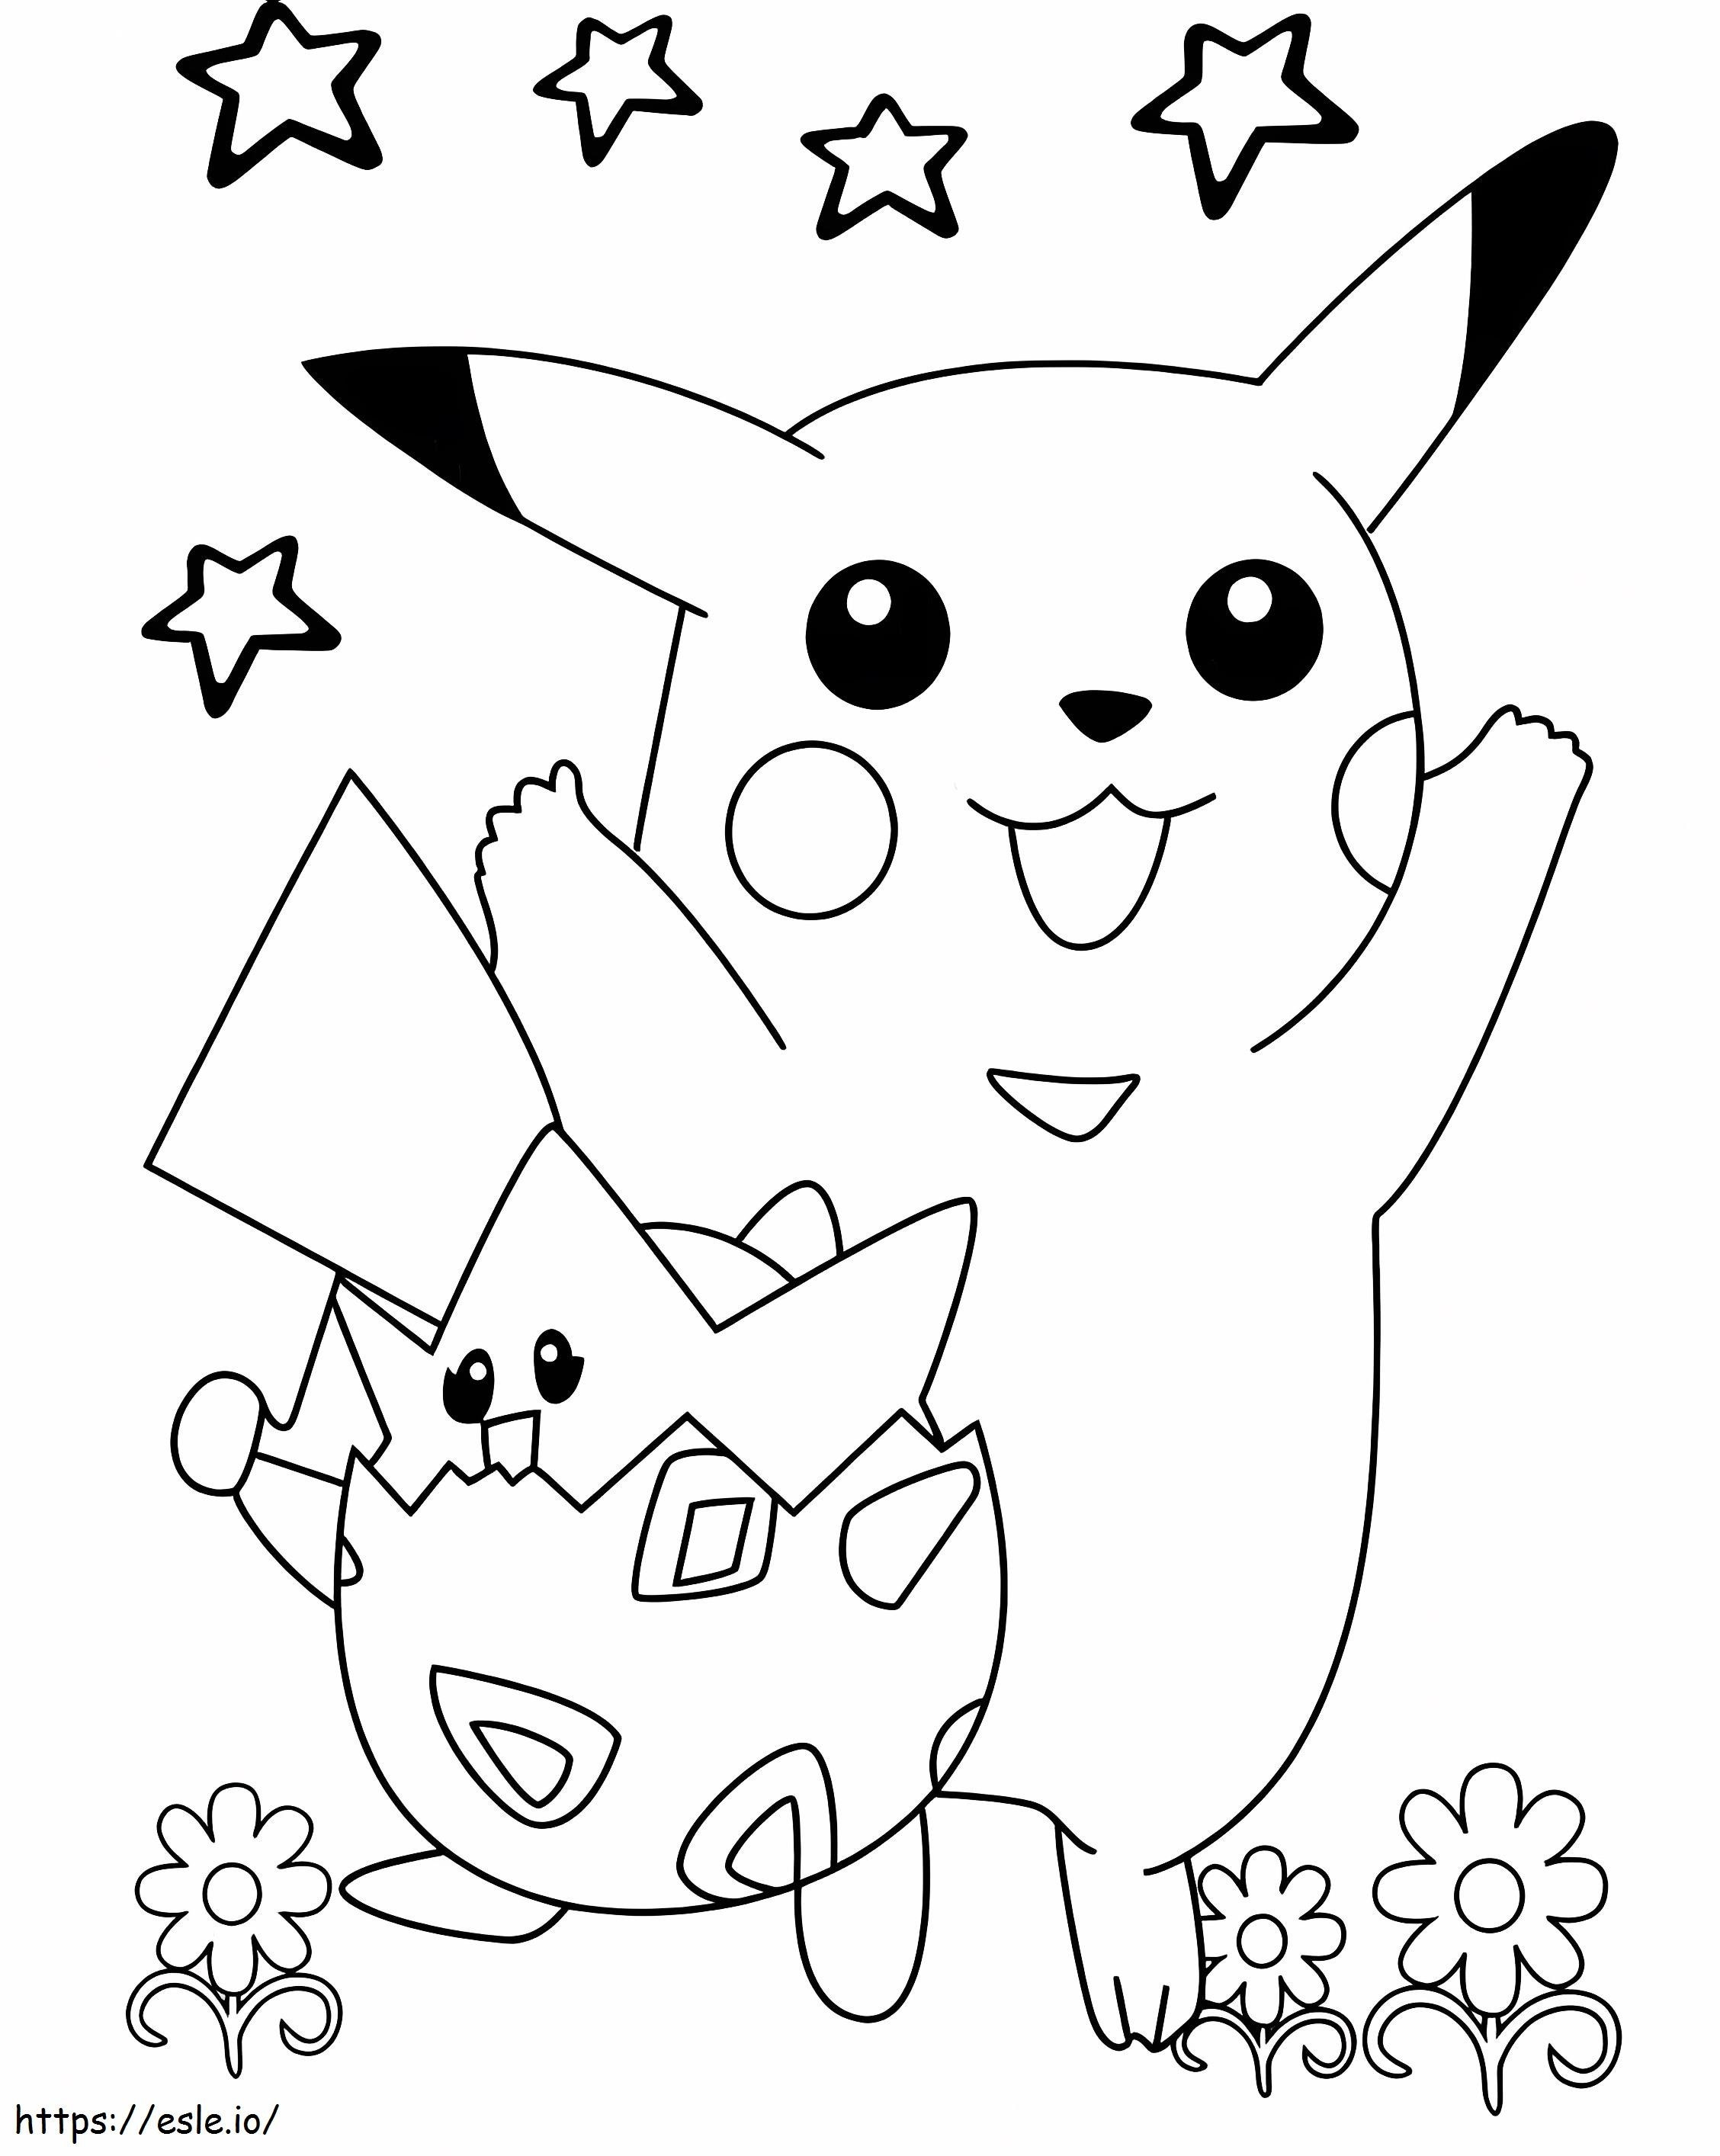 Togepi und Pikachu ausmalbilder